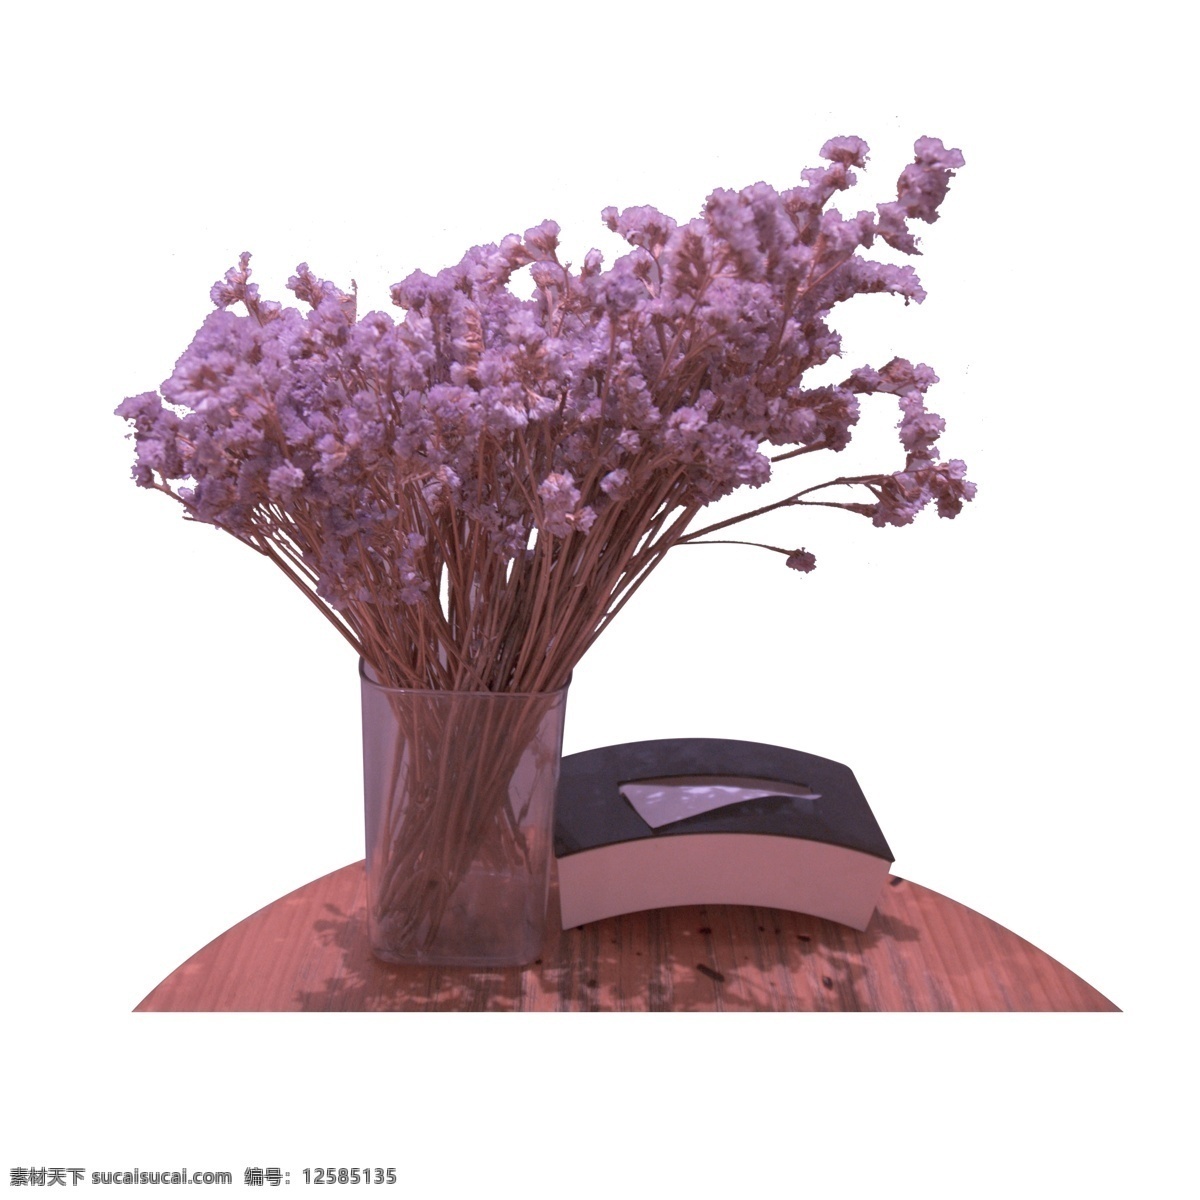 彩色 植物 花朵 花瓶 元素 装饰 纹理 盛开 大自然 风景 可爱 真实 书籍 桌子 桌面